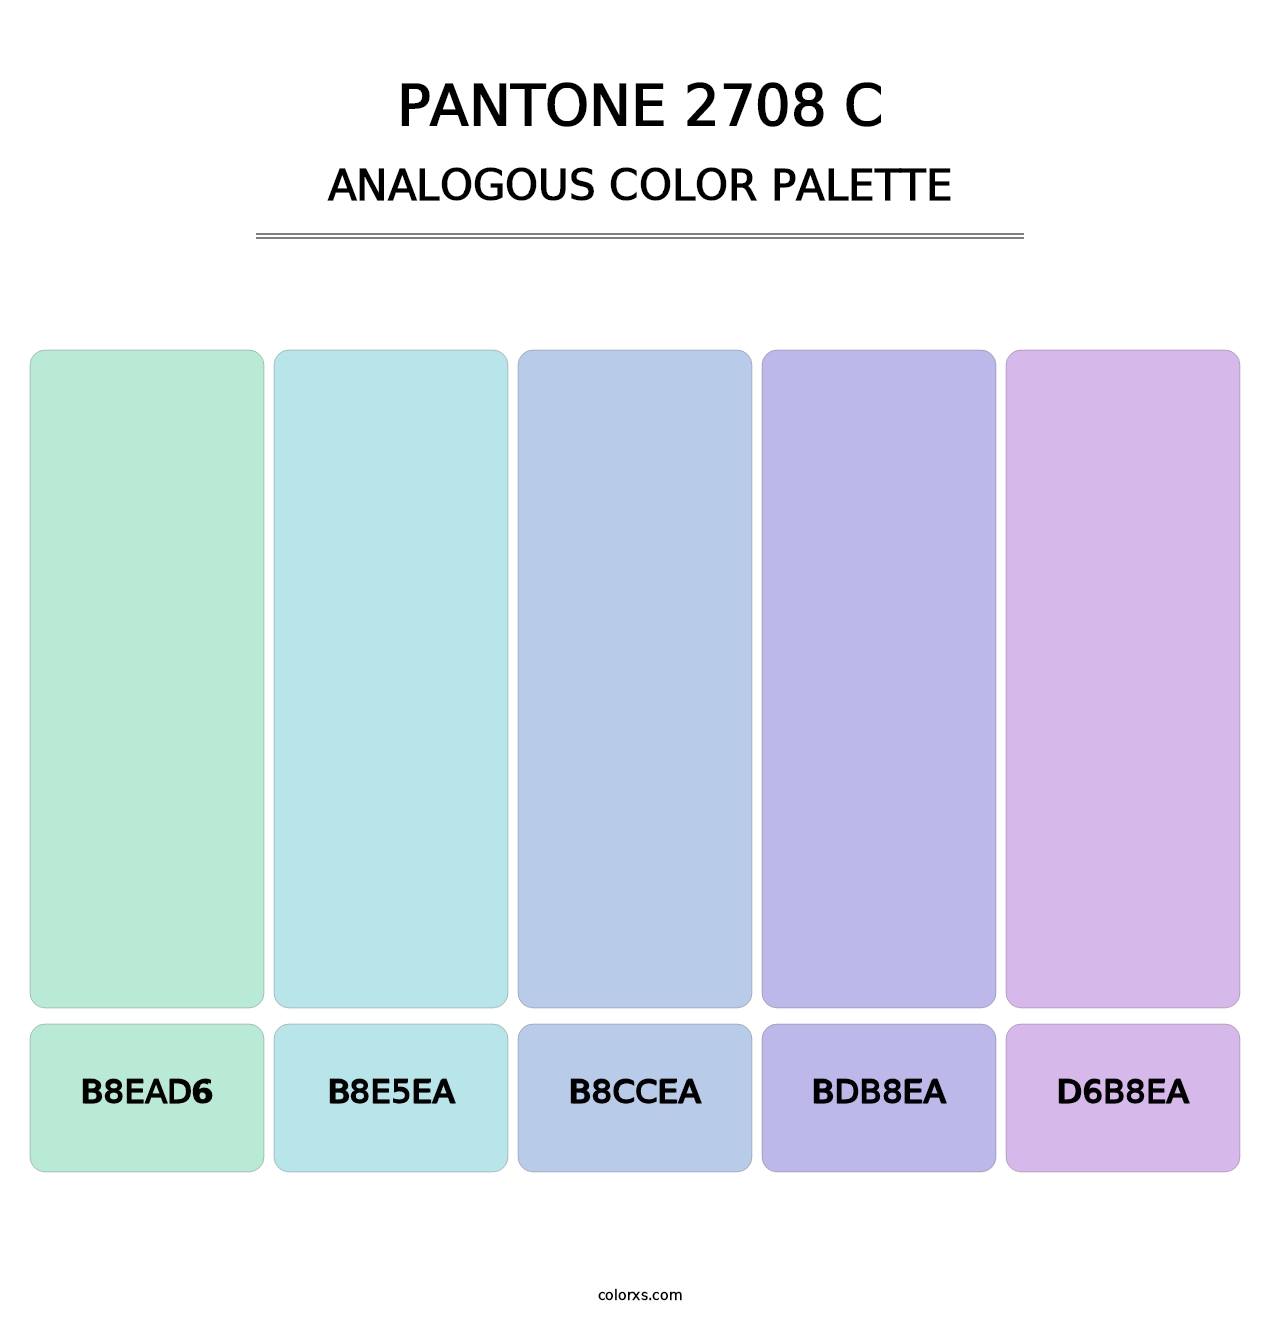 PANTONE 2708 C - Analogous Color Palette